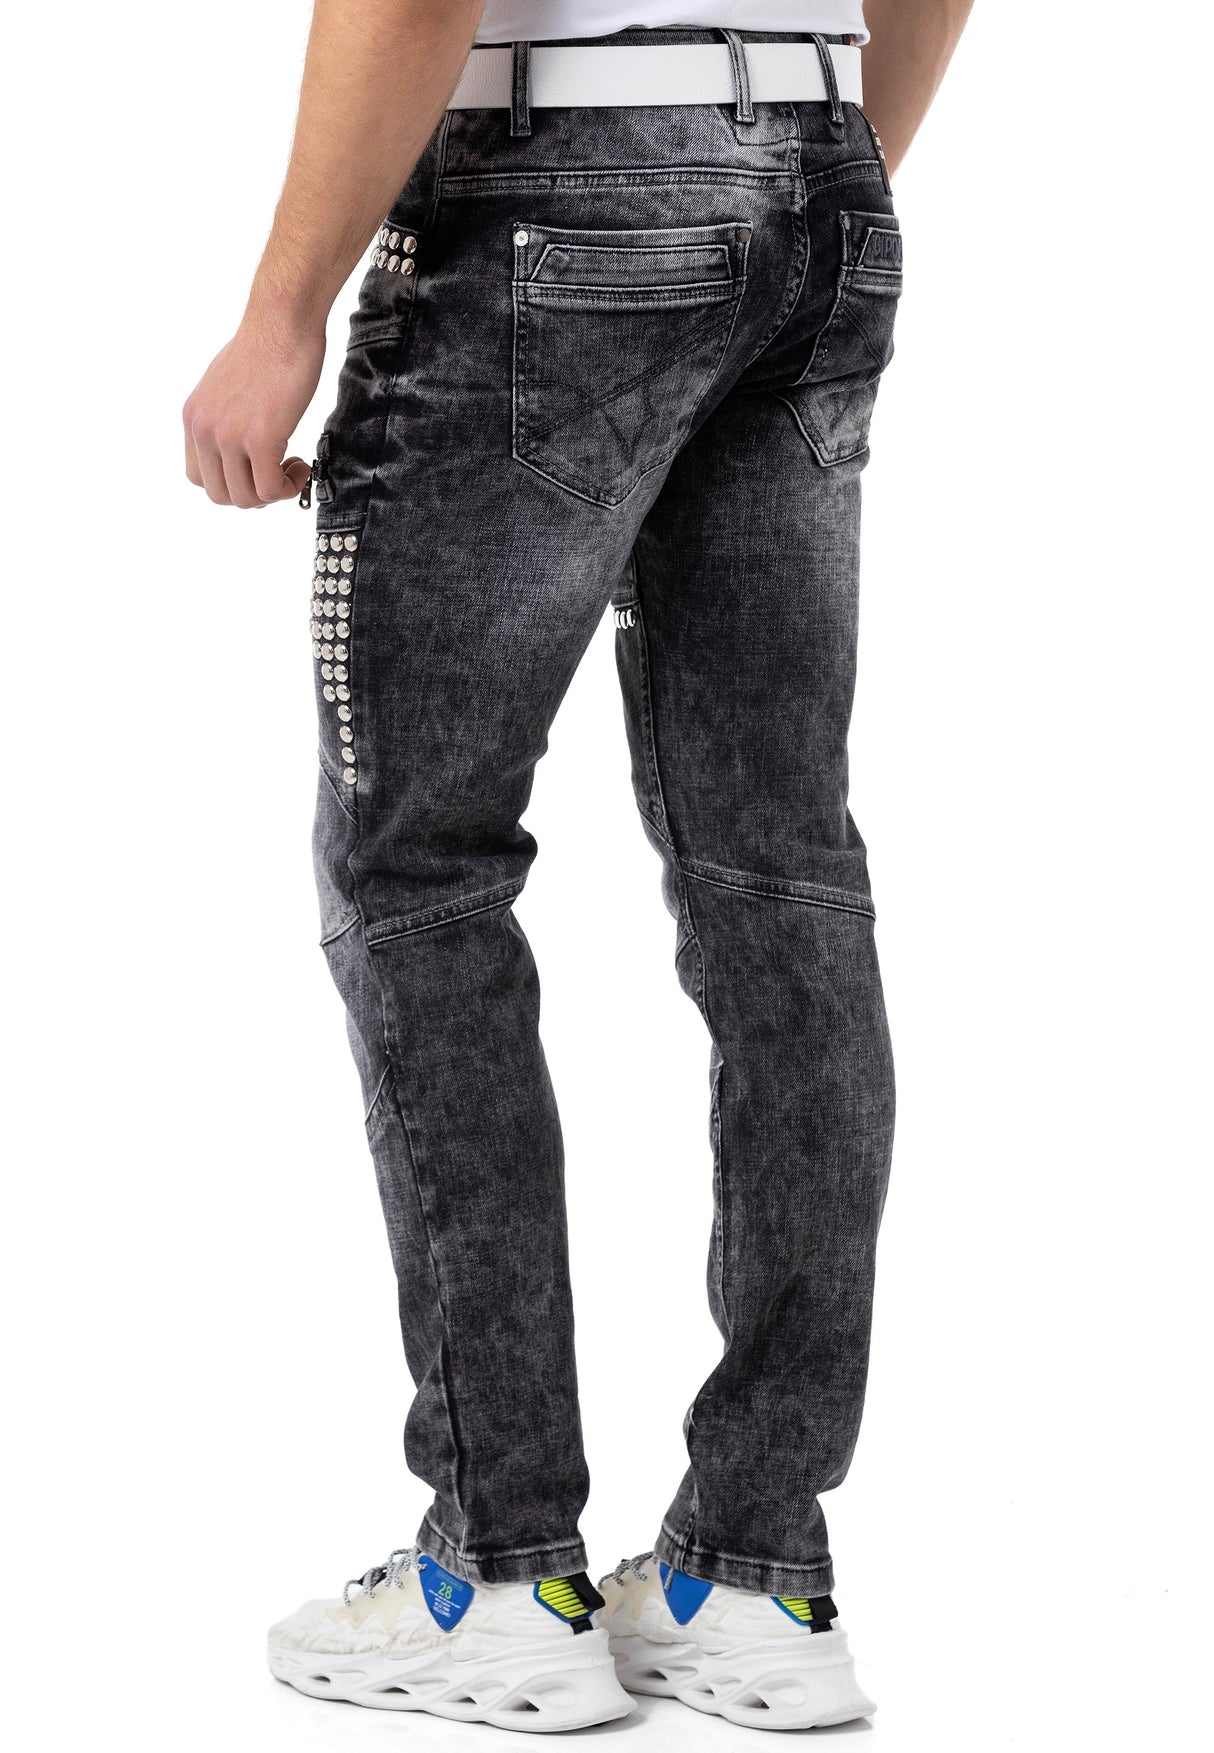 CD732 Jeans de Hombre con Tachas estilo Motero